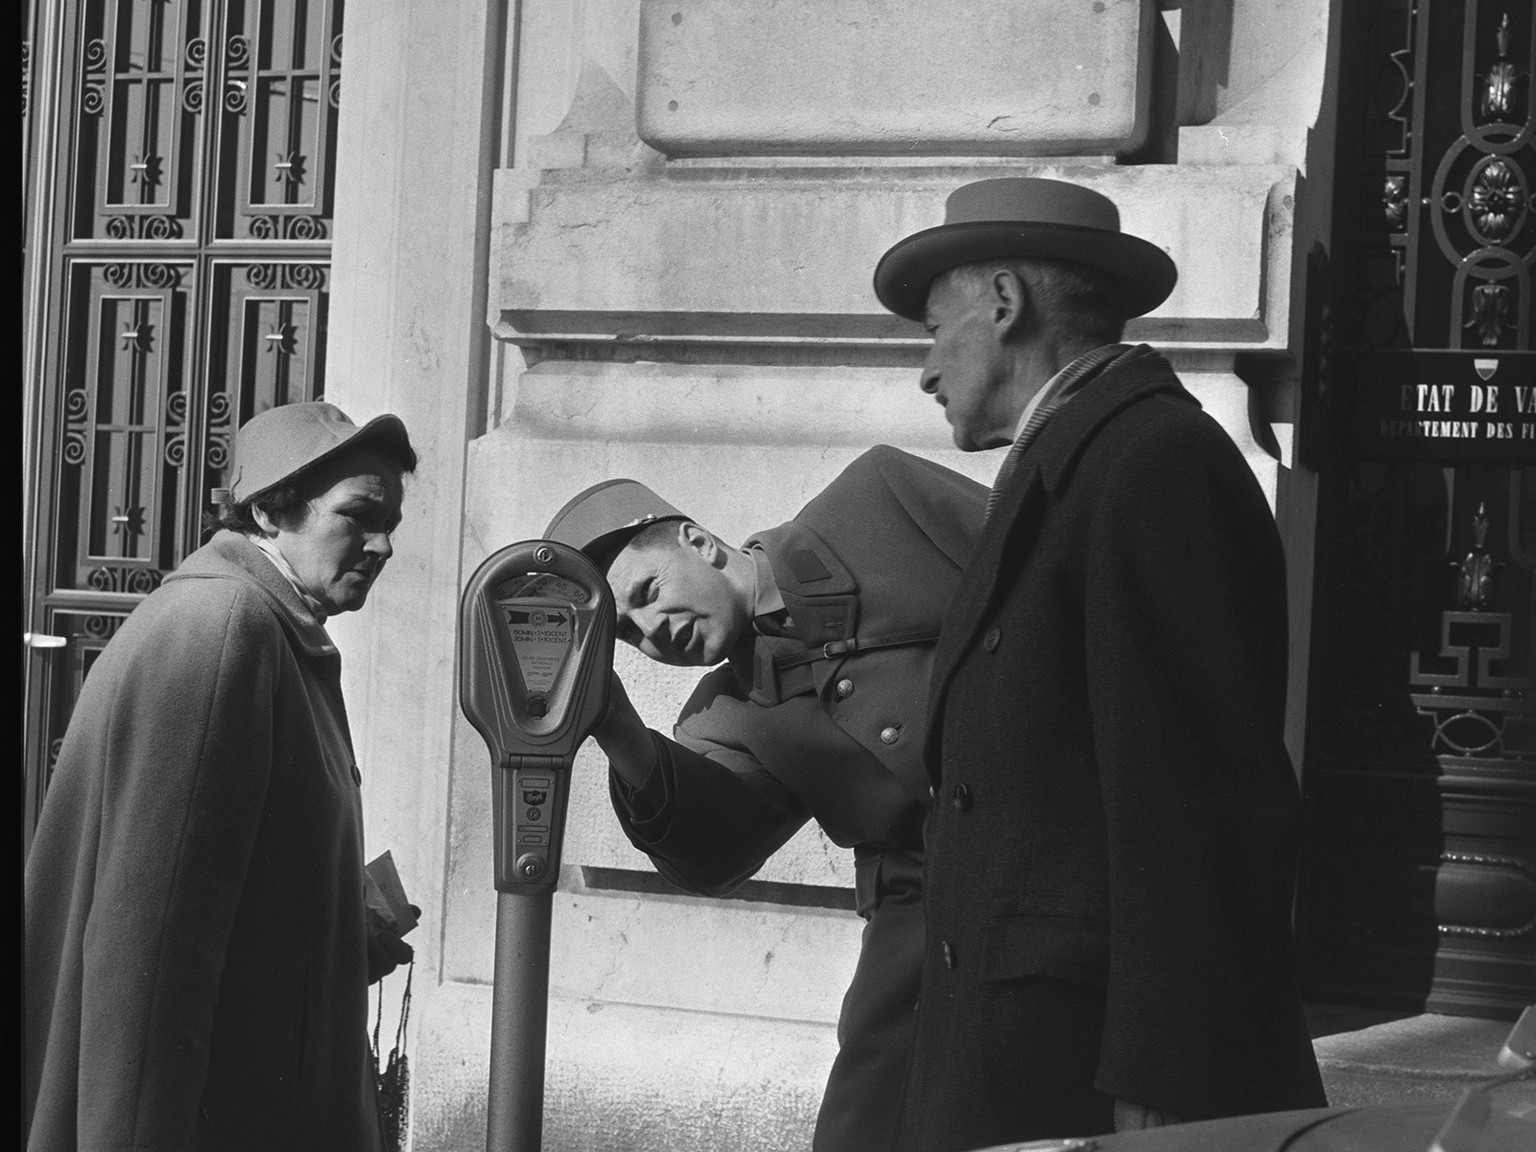 Ein Verkehrspolizist erklärt einer Passantin und einem Passanten eine Parkuhr, Lausanne, 1959
https://permalink.nationalmuseum.ch/100639352